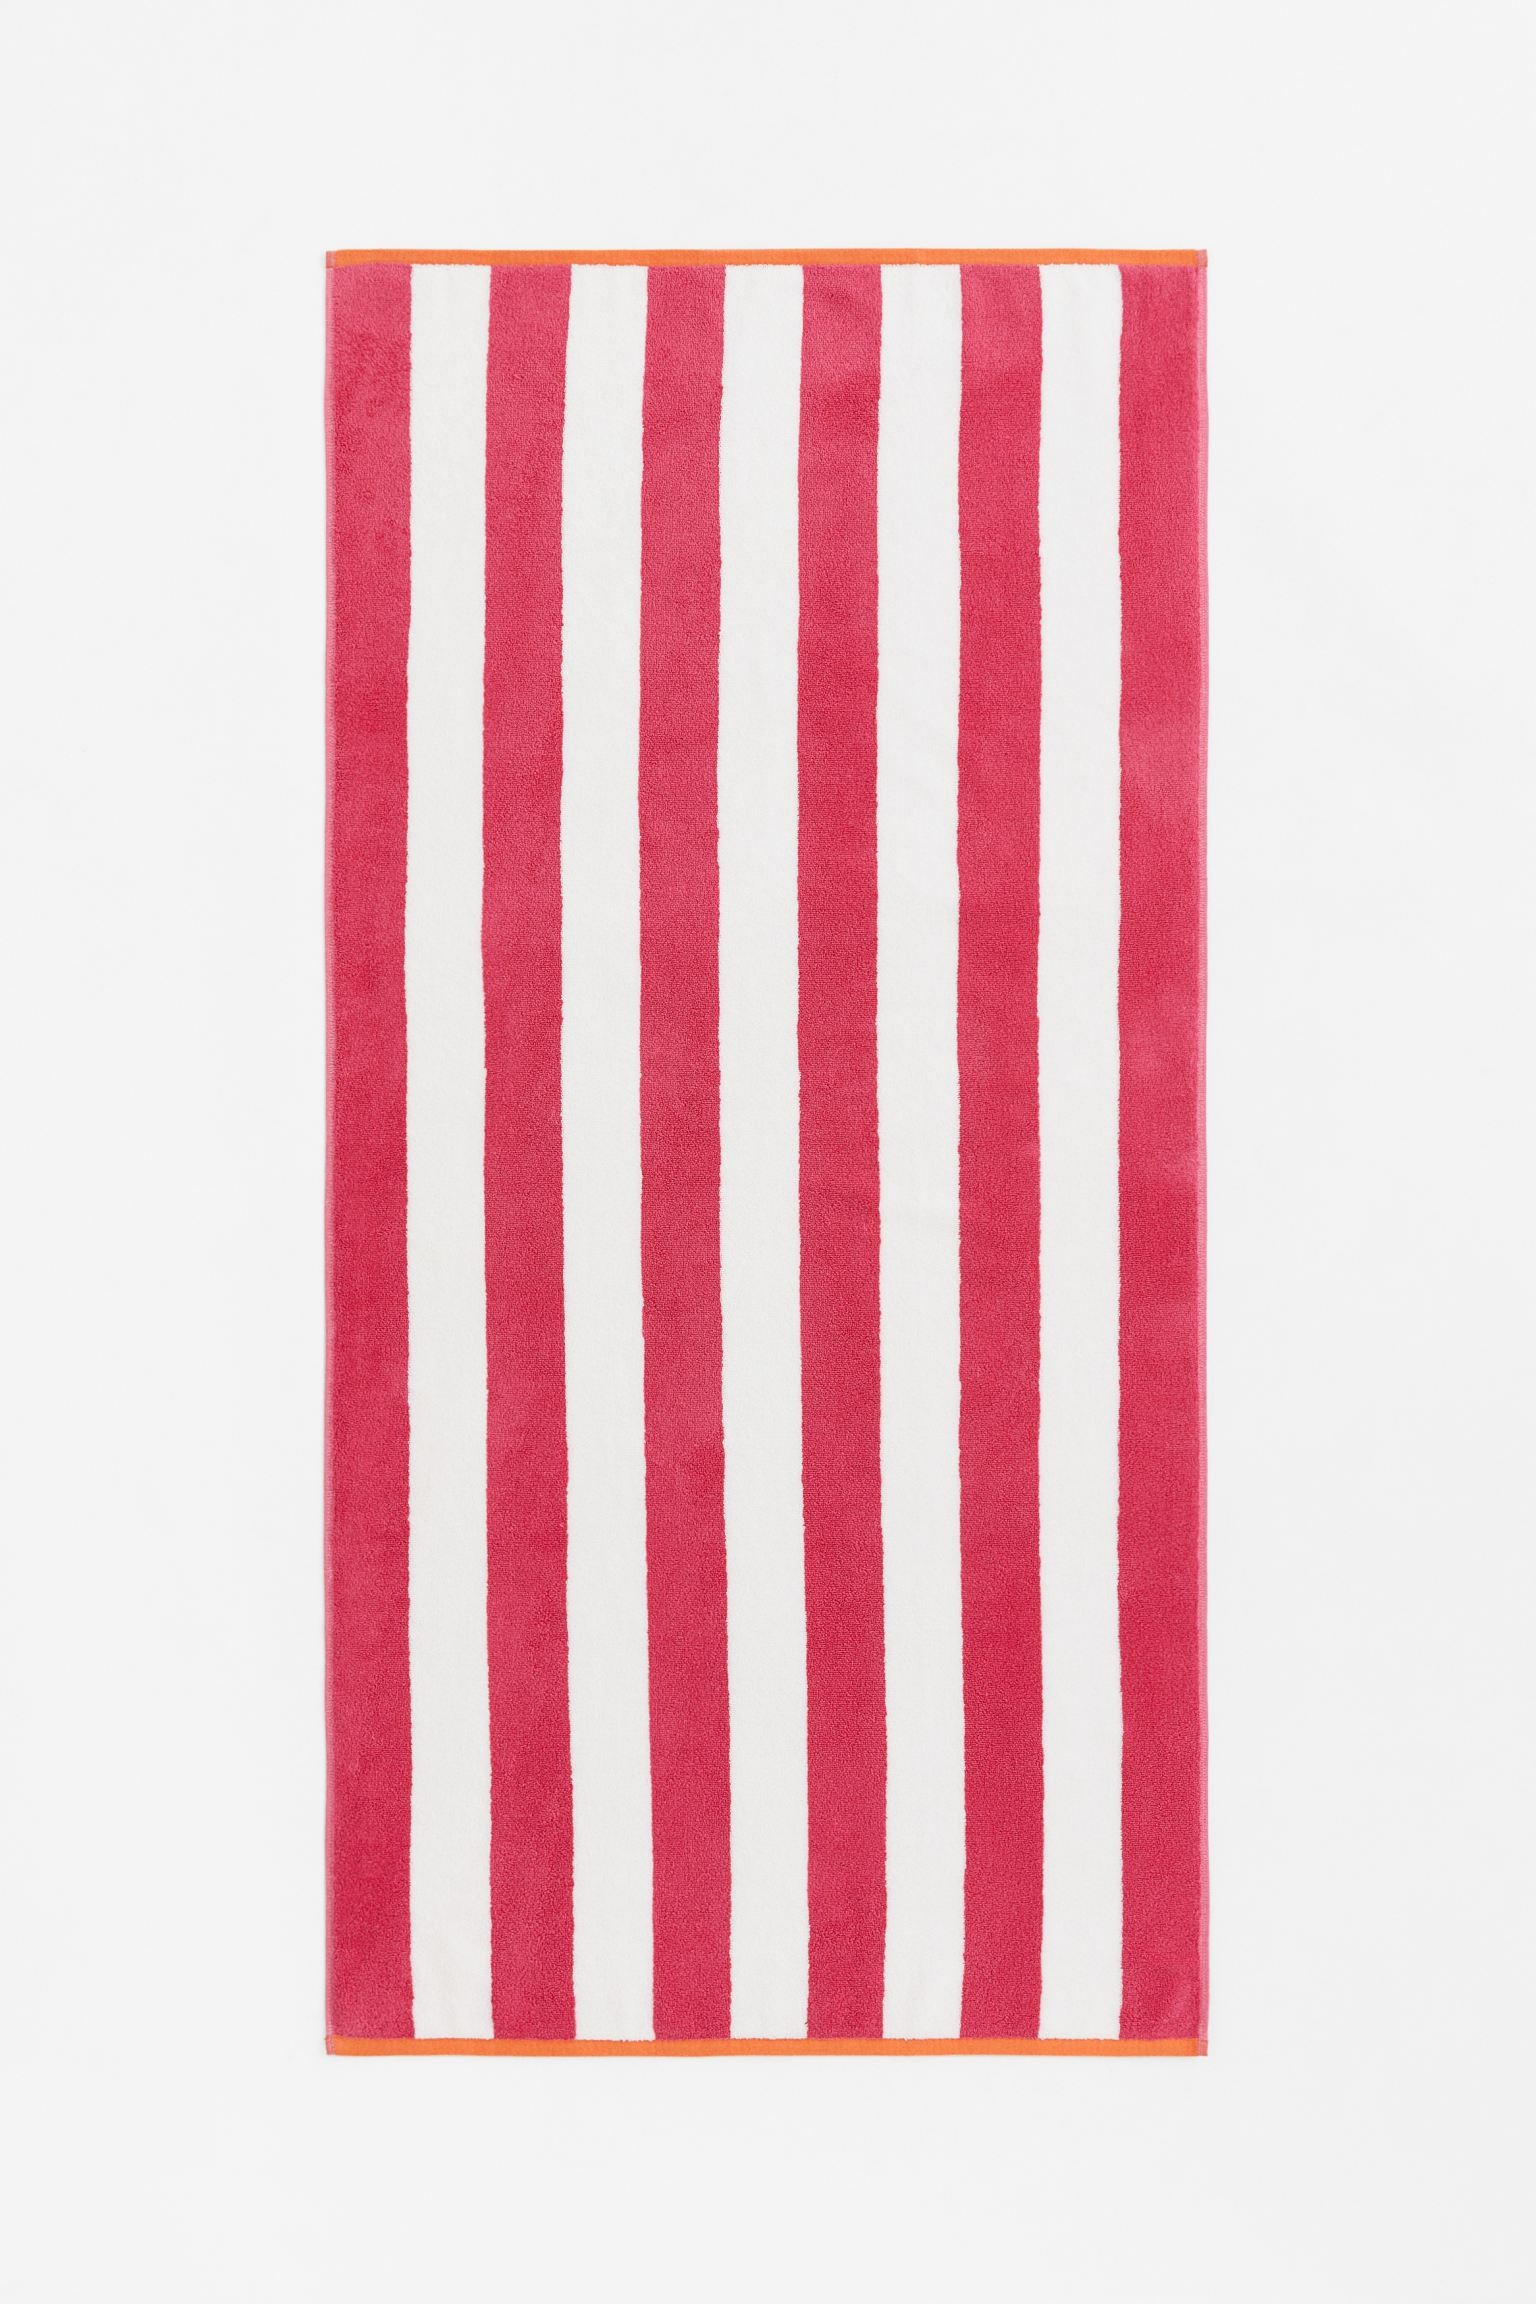 H&M Home Пляжное полотенце в полоски, Розовый/Белый, 80x165 1062313009 | 1062313009